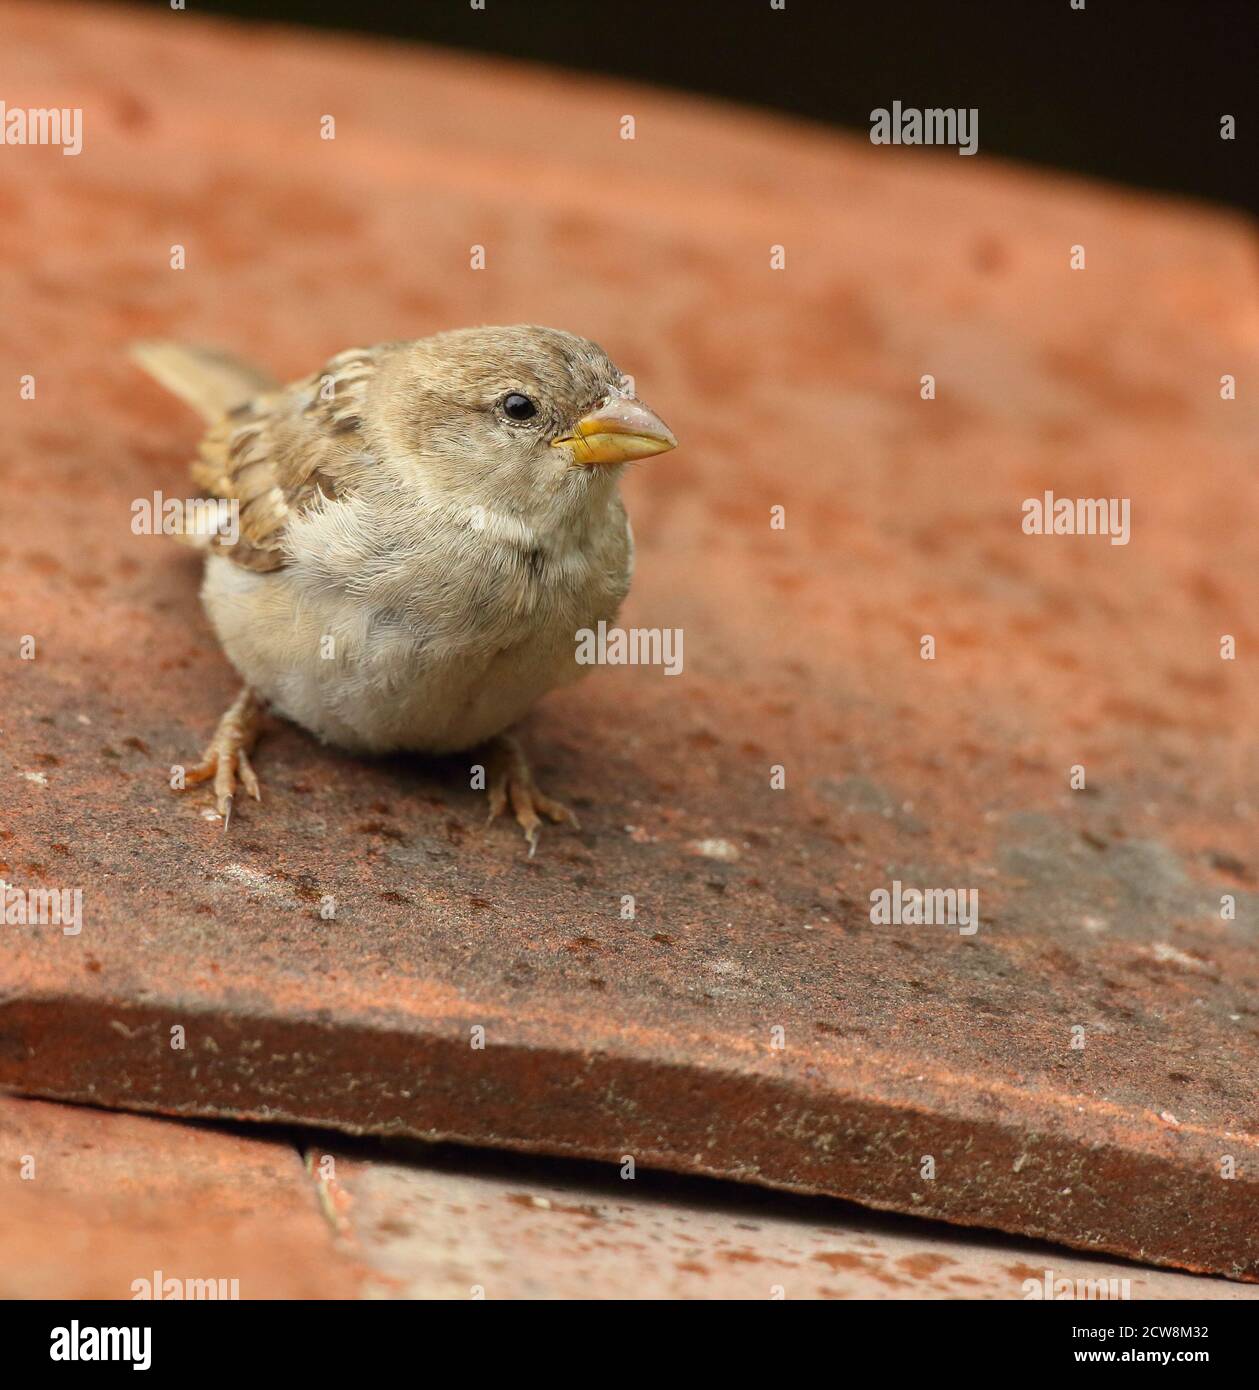 Weiblicher Haussparrow (Passer domesticus) auf Lehmdachziegeln. Aufgenommen Im August 2020. Stockfoto